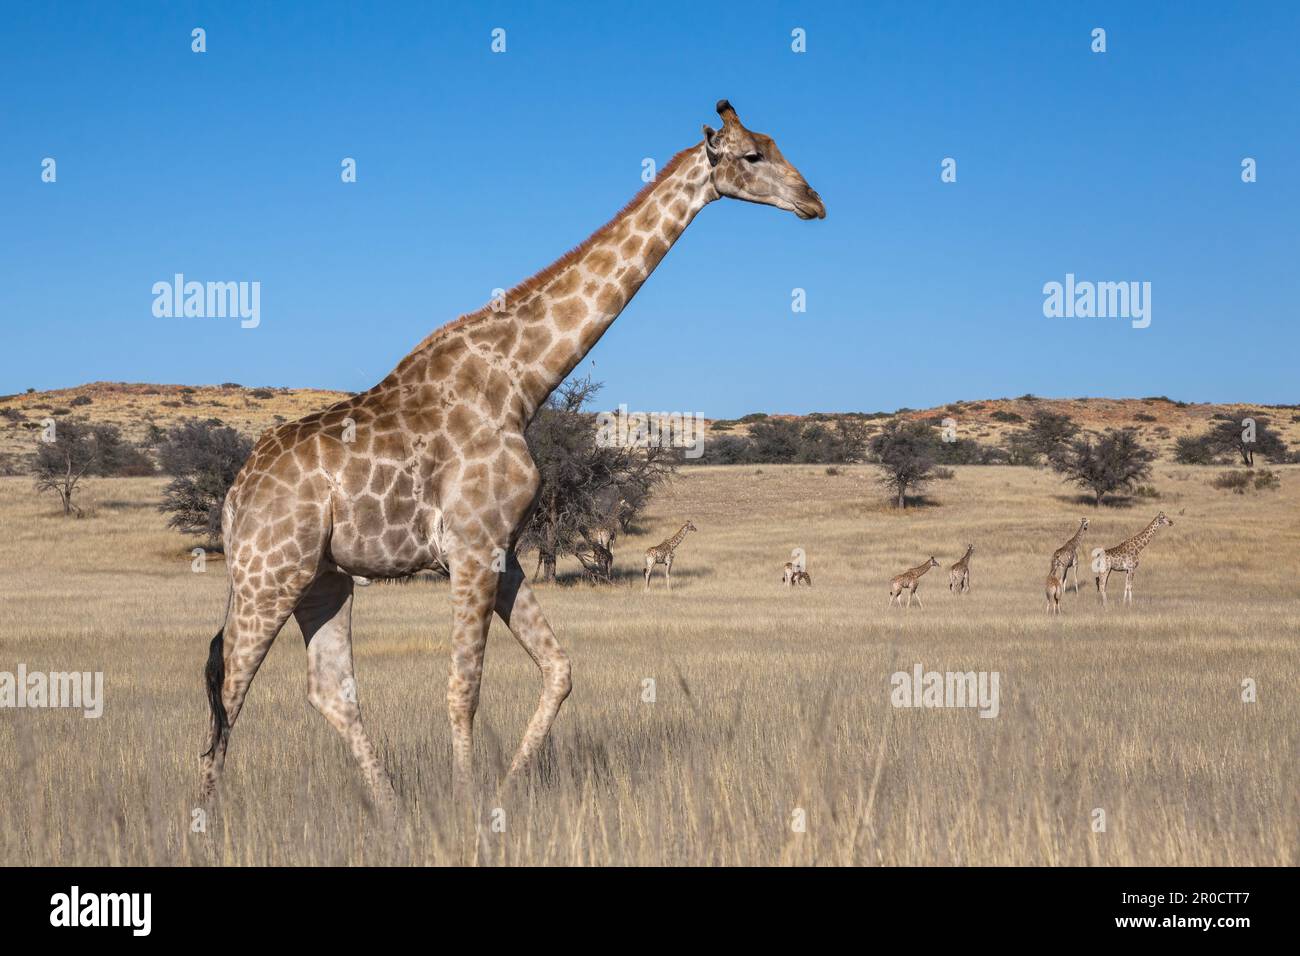 Girafe (Giraffa camelopardalis), parc transfrontier de Kgalagadi, Cap Nord, Afrique du Sud Banque D'Images